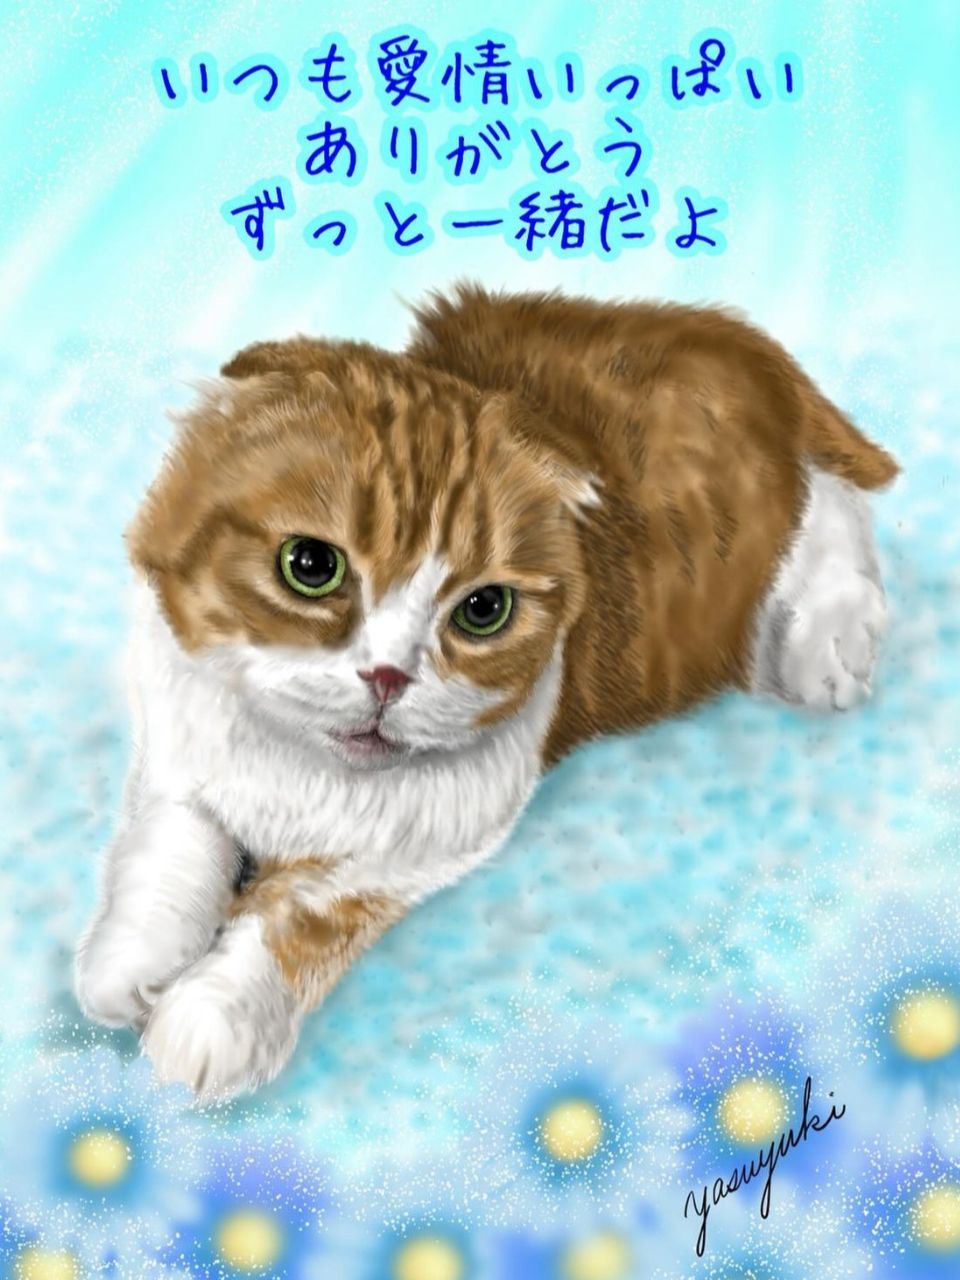 猫「イケちゃん」似顔絵